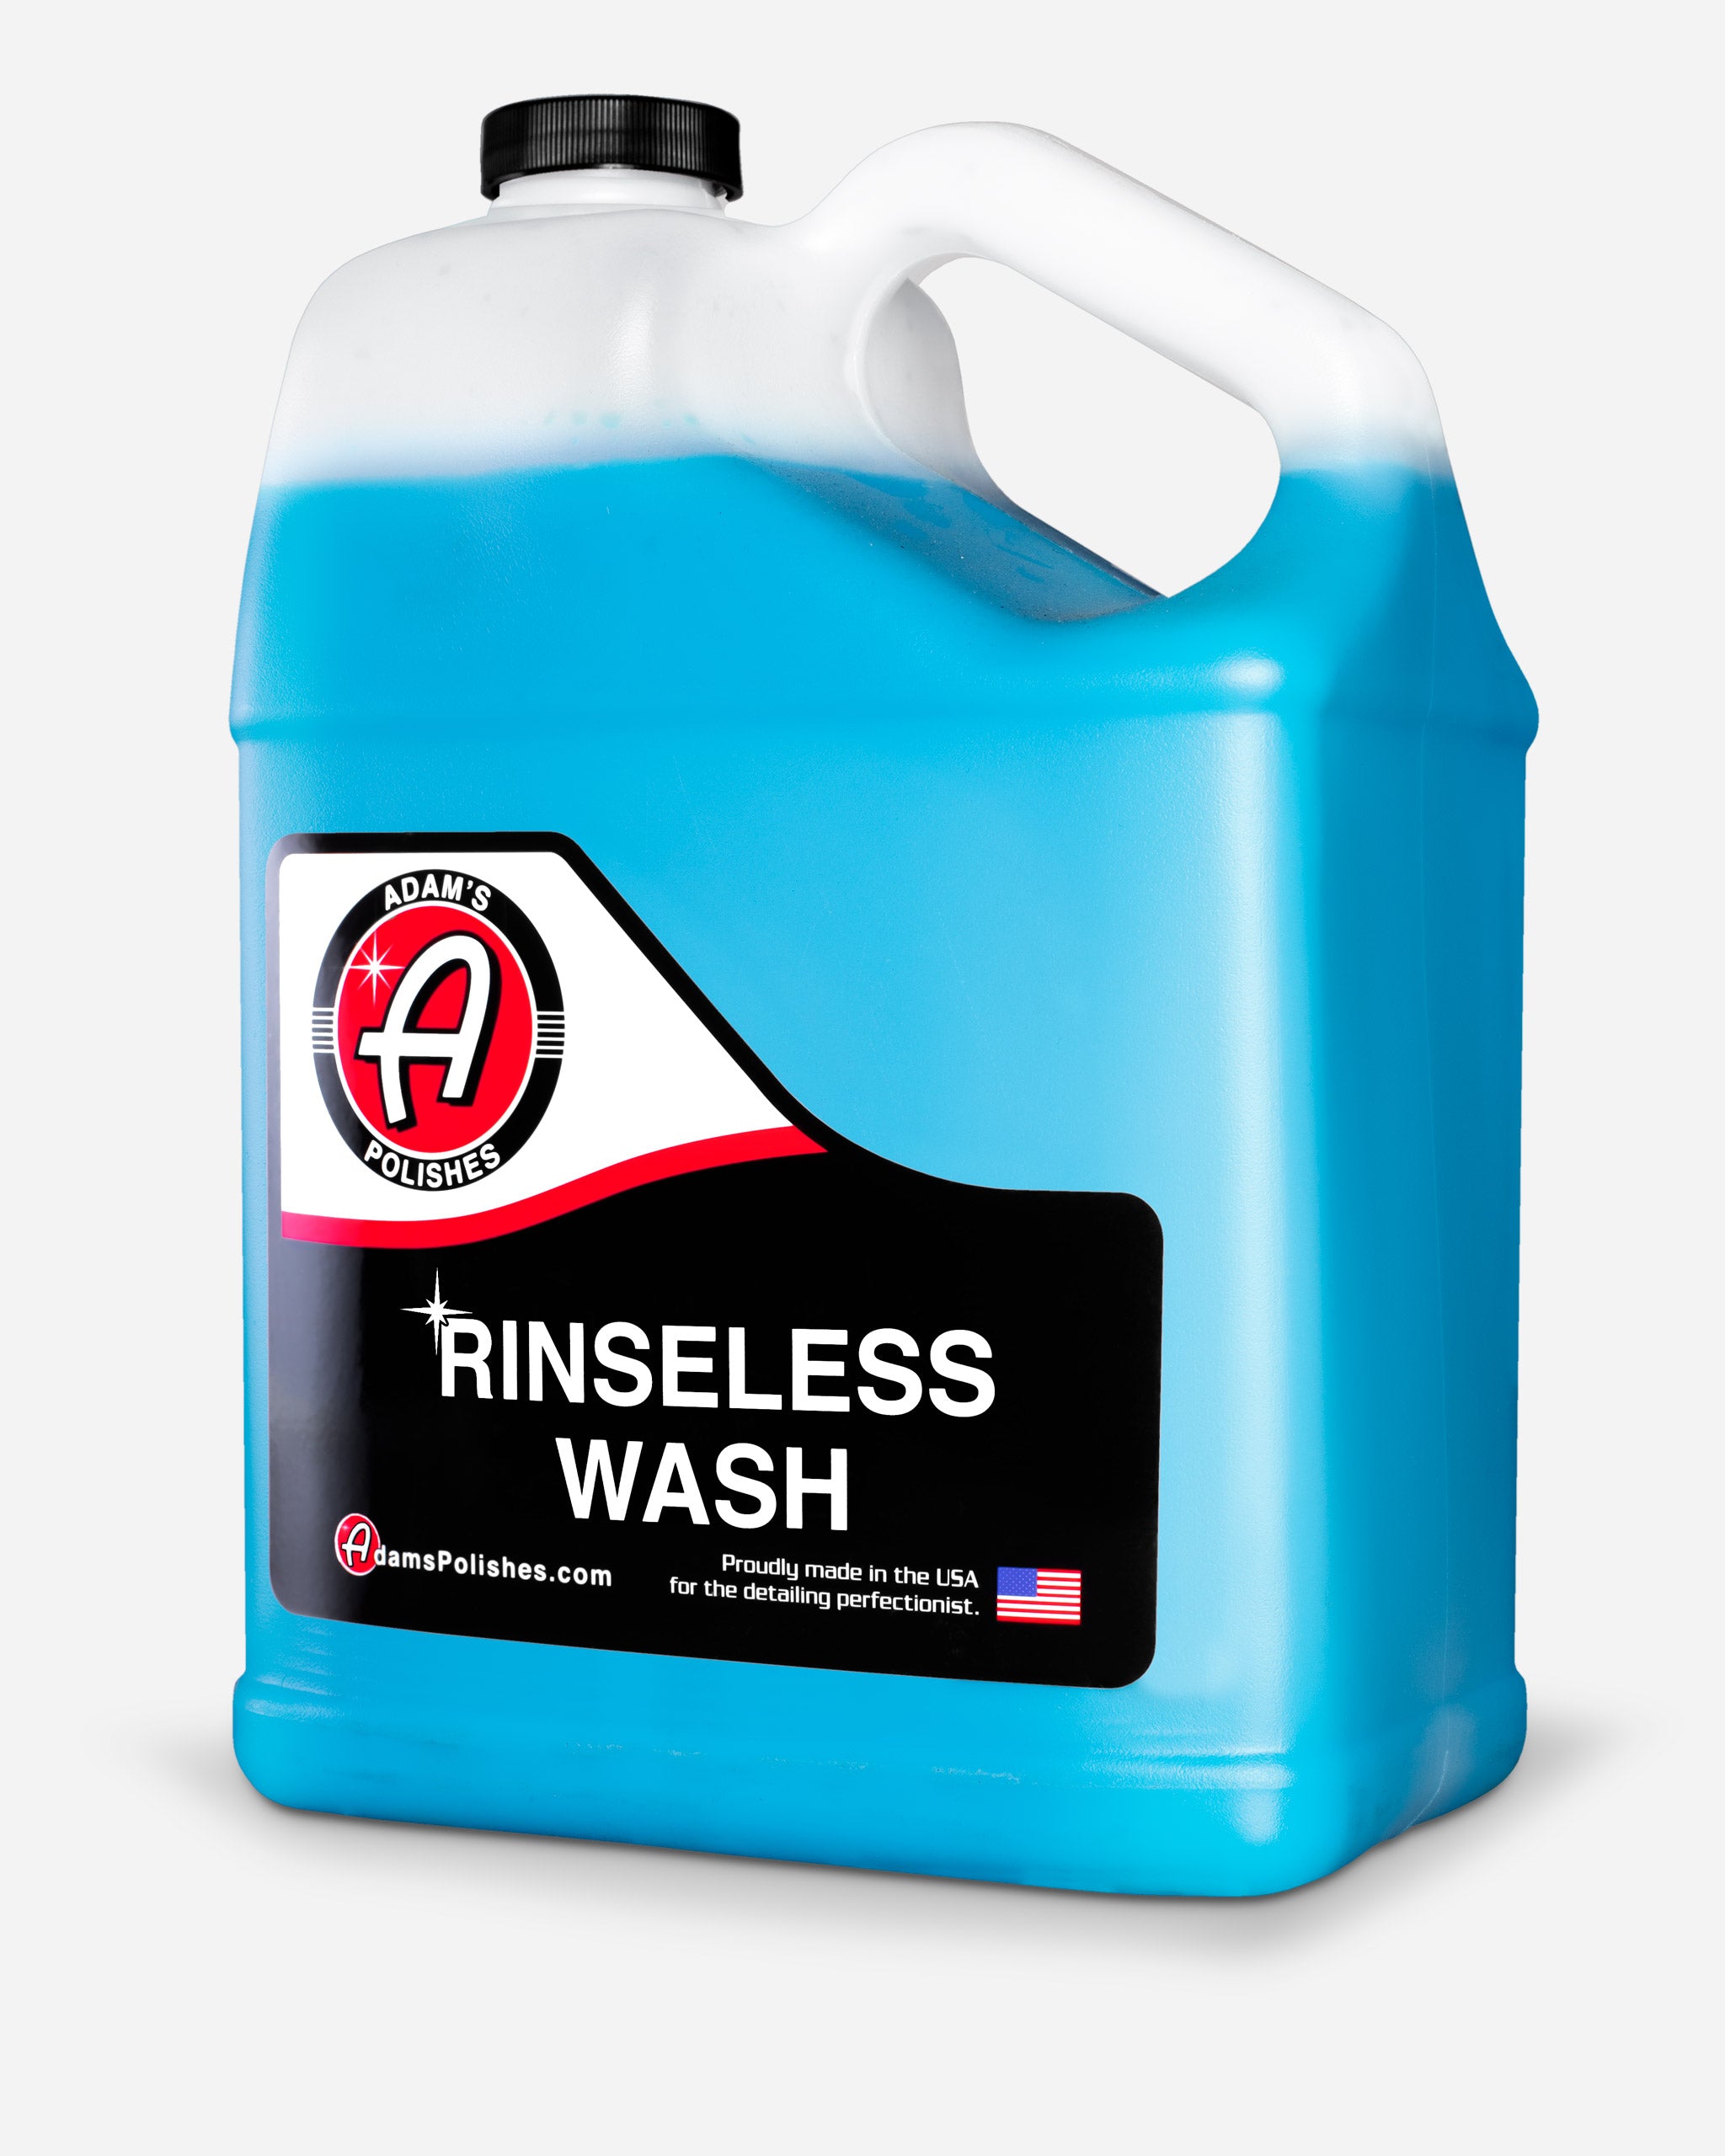 Adam's Rinseless Wash